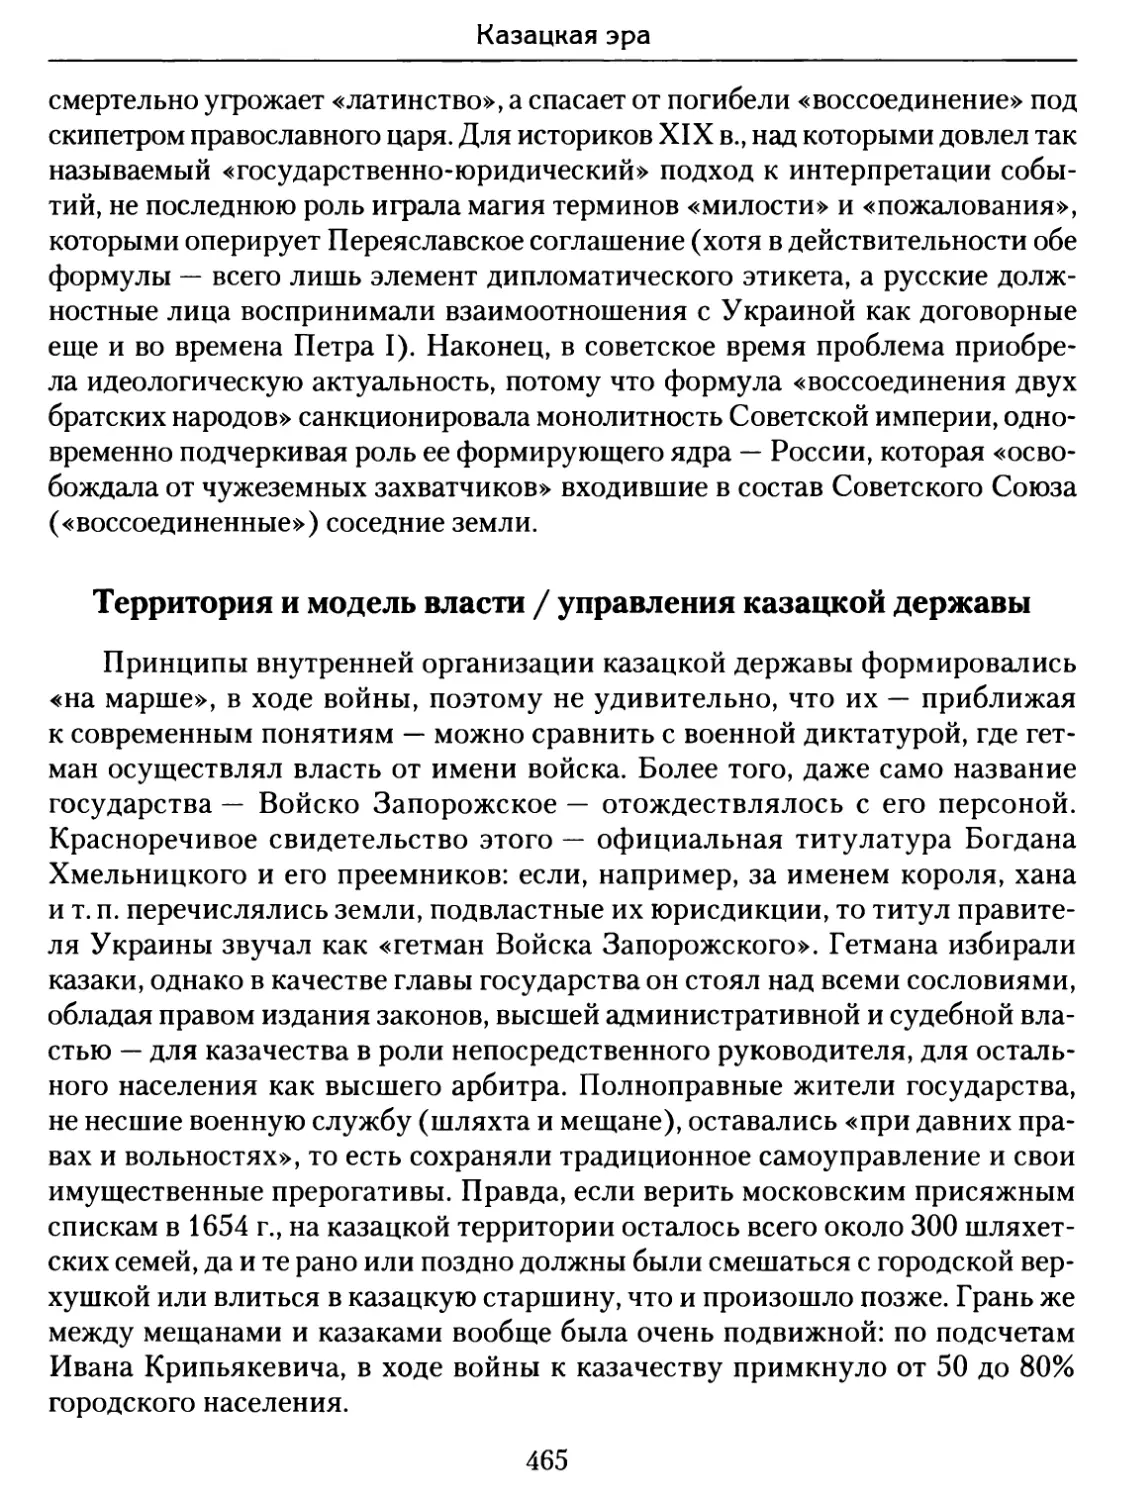 Территория и модель власти / управления казацкой державы